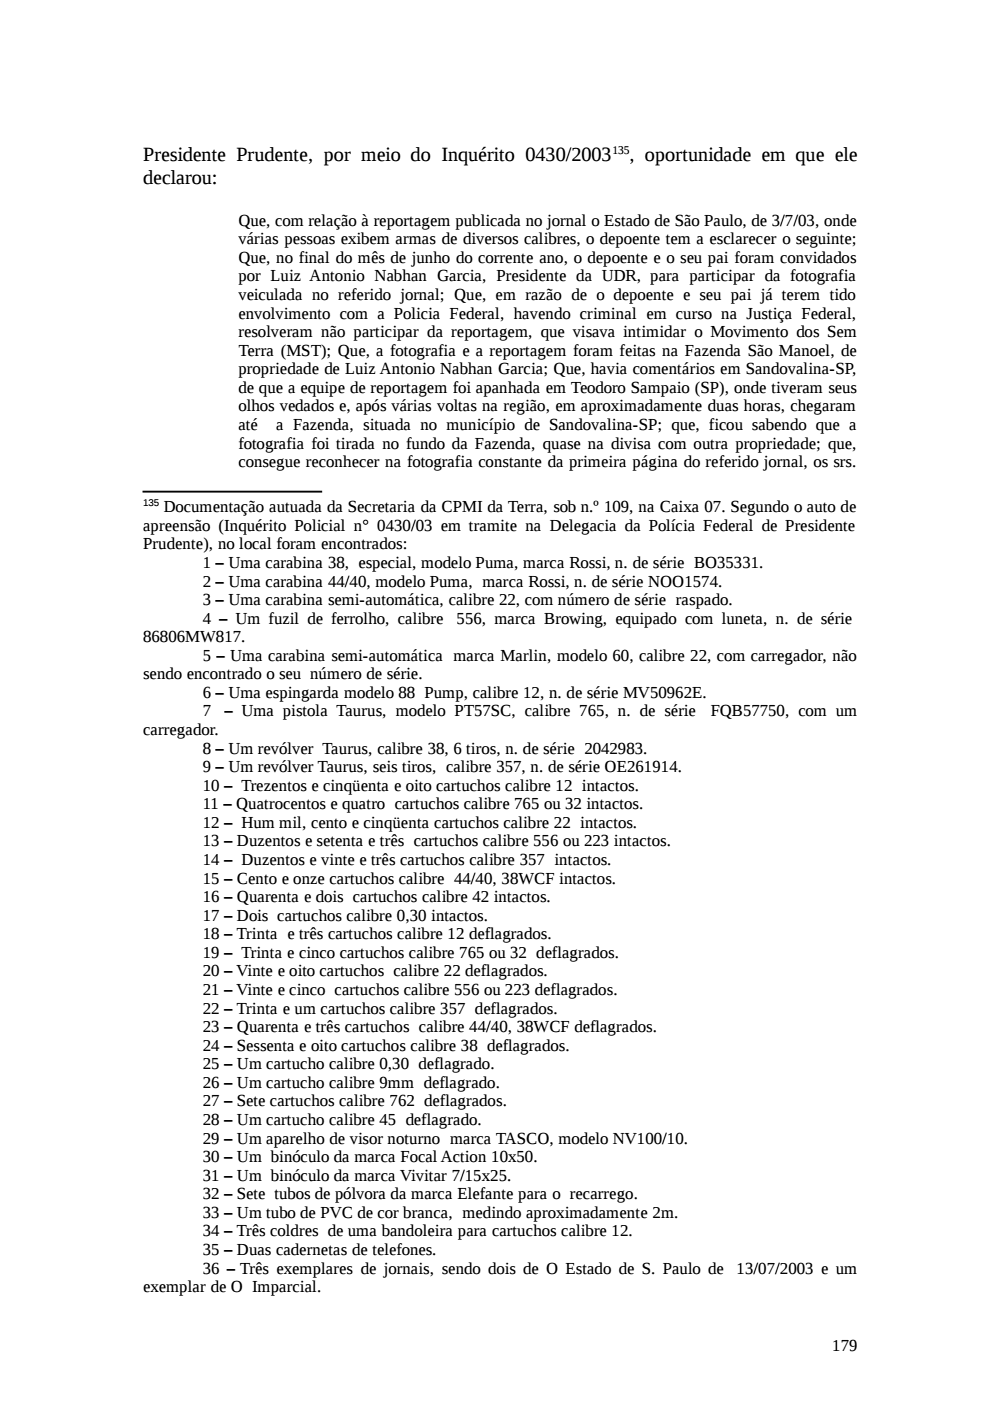 Page 179 from Relatório final da comissão